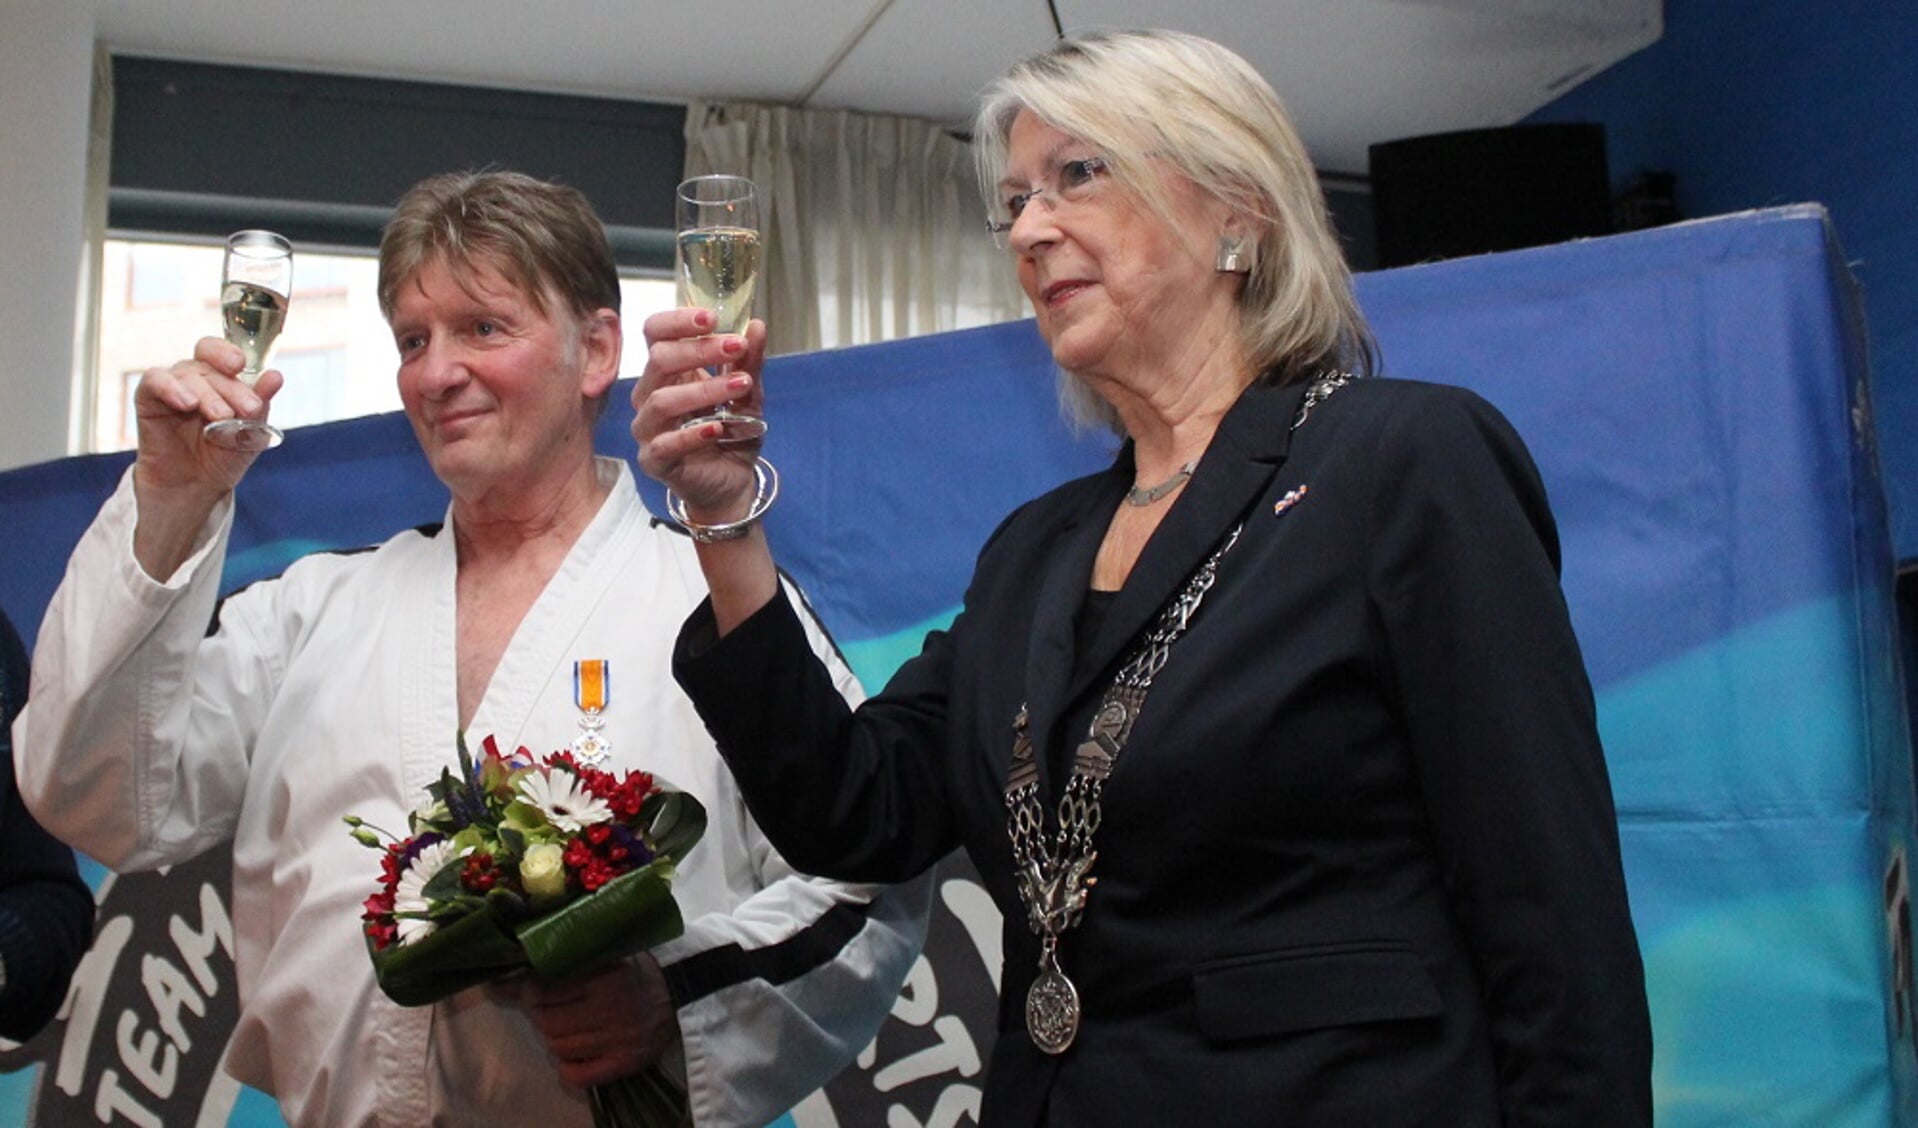 Jan Koster heft het glas met burgemeester Francisca Ravestein van Pijnacker die hem zojuist een Koninklijke onderscheiding heeft opgespeld (foto: Jan Wenteler)